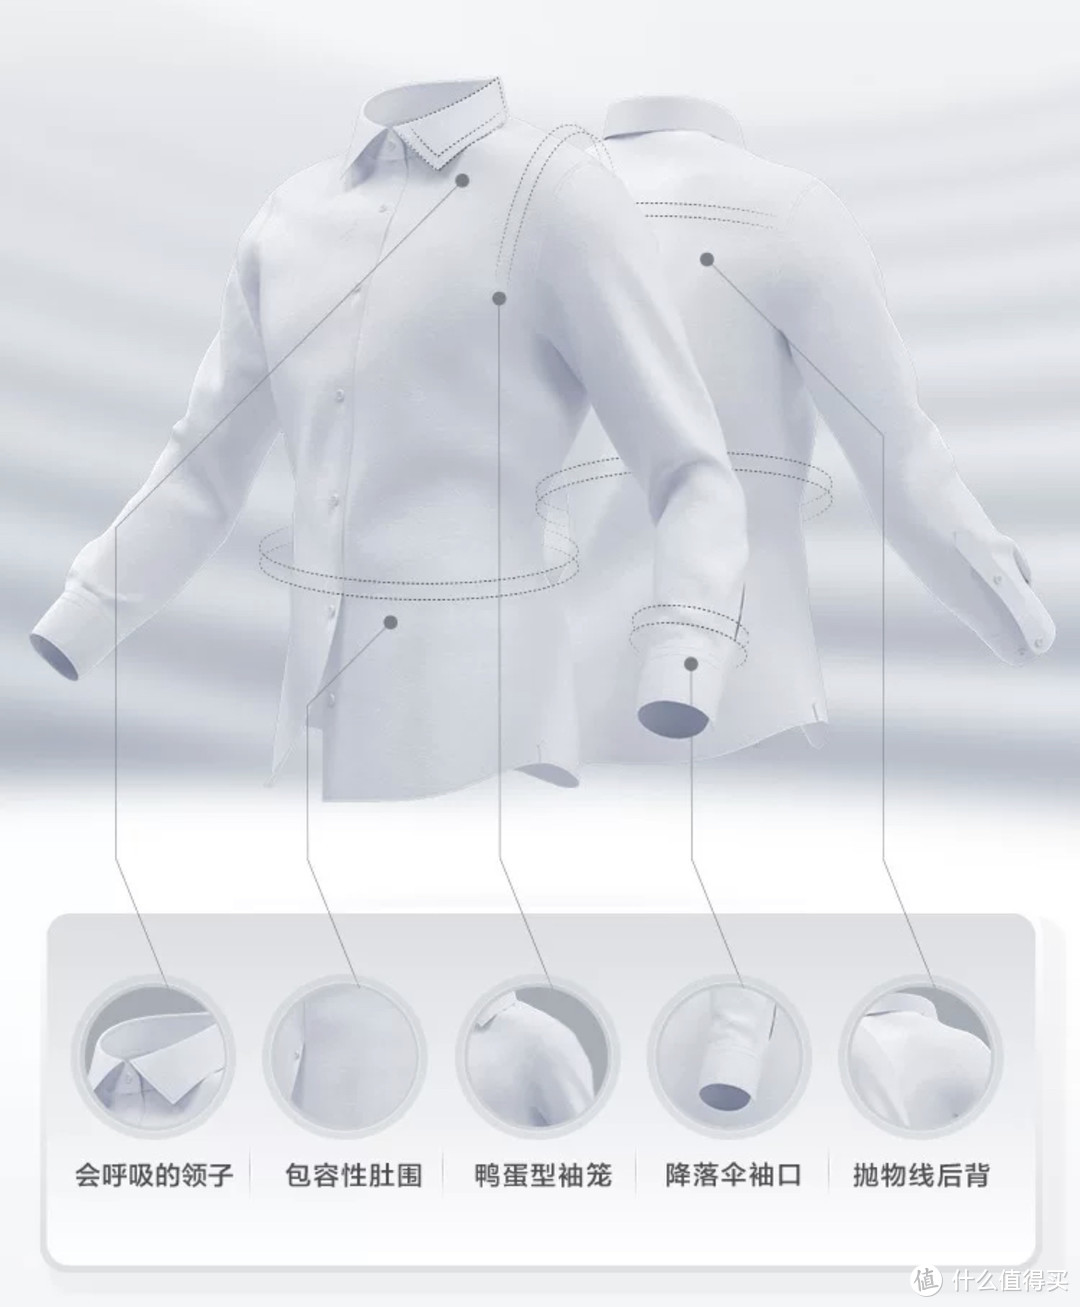 连罗永浩都为其站台的衬衫，到底如何？除此之外还有哪些功能性衬衫可选？